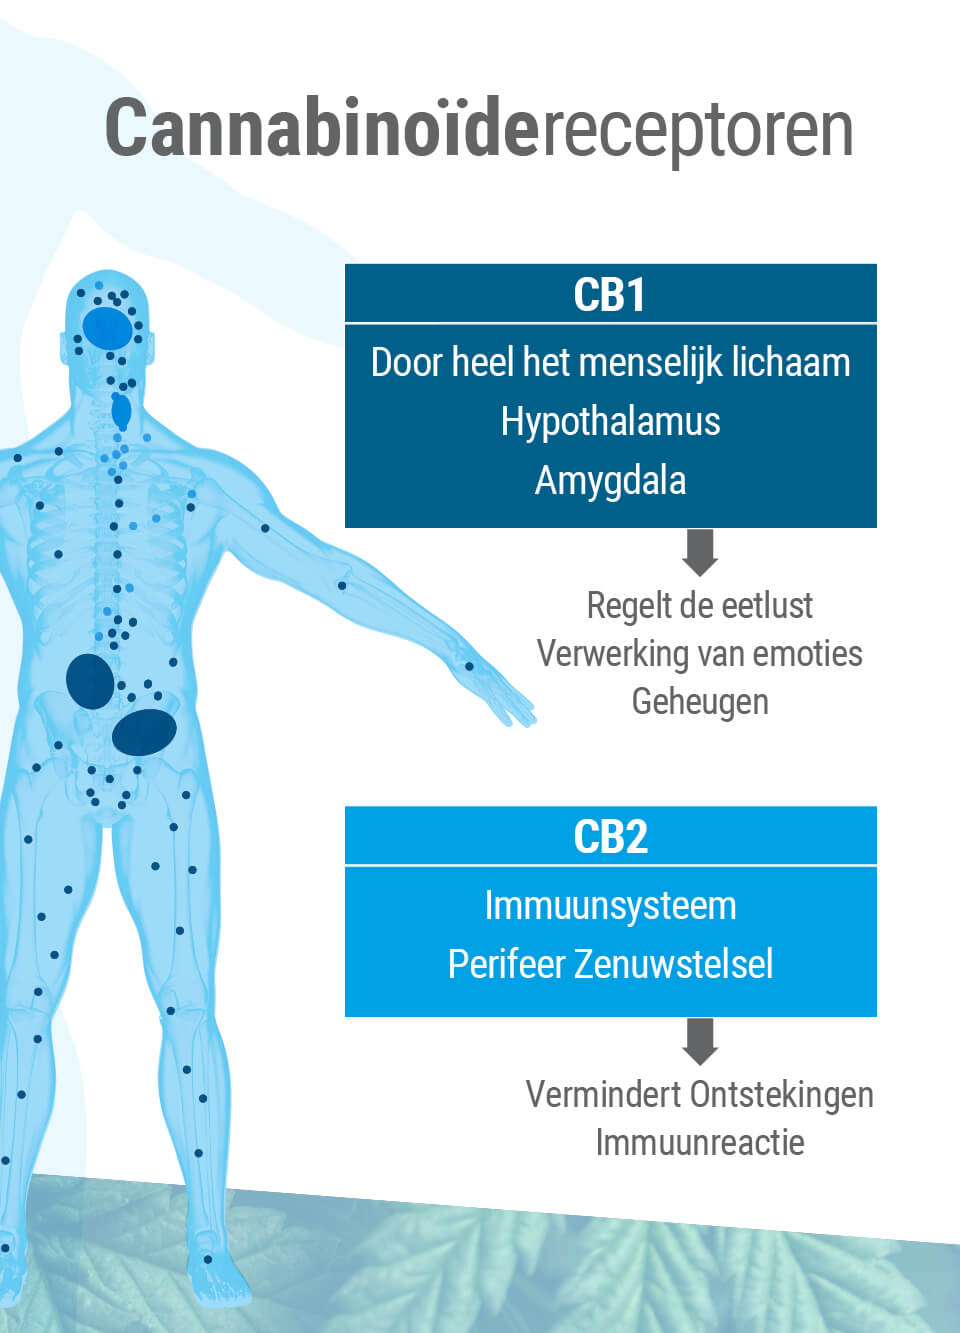 De twee belangrijkste receptortypes van het endocannabinoïde systeem zijn CB1 en CB2